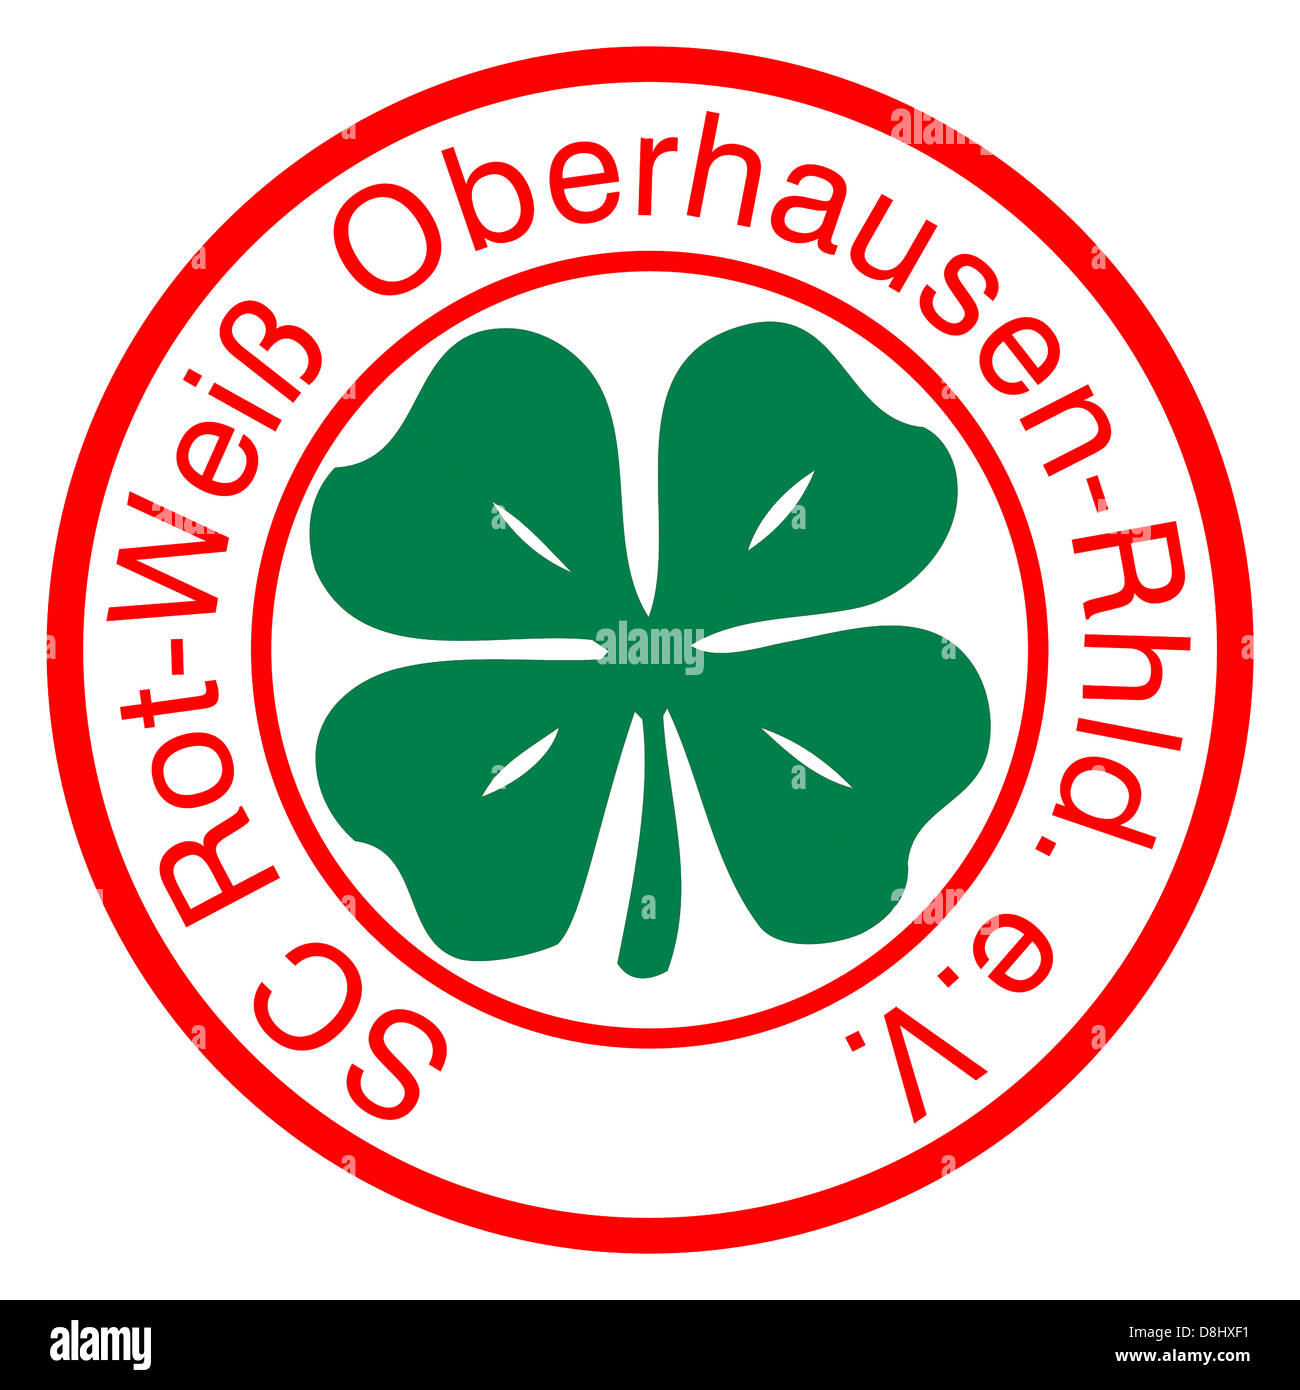 El logotipo del equipo de fútbol alemán SC Rot-Weiss Oberhausen. Foto de stock